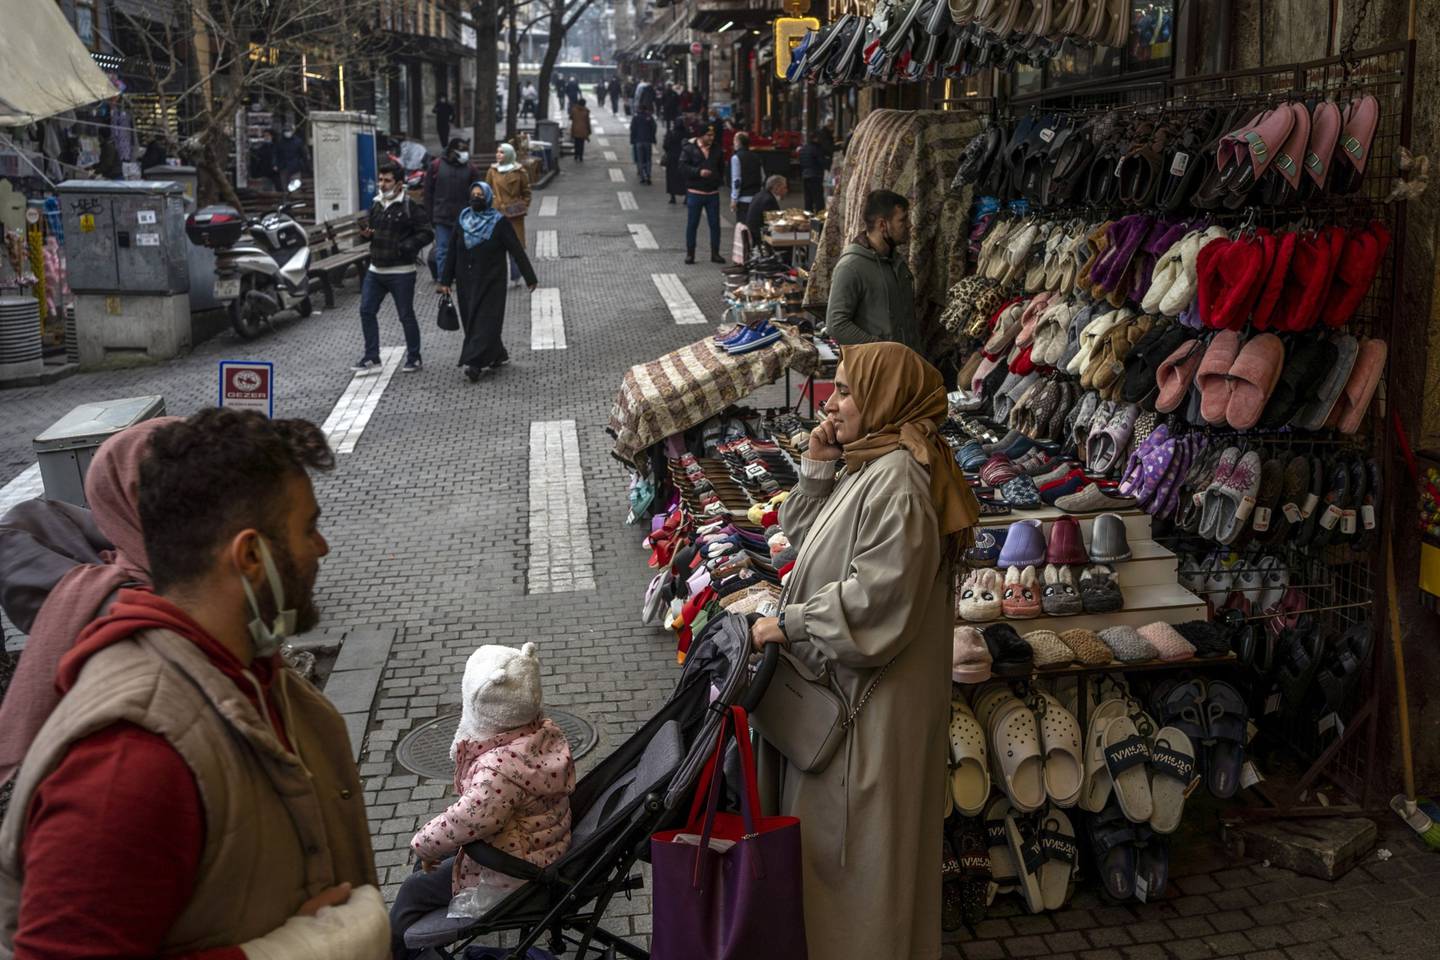 Peatones en una calle comercial en Bursa, Turquía, el martes 4 de enero de 2022. Los inversores turcos siguen aferrándose a las monedas extranjeras, lo que socava el plan del presidente Recep Tayyip Erdogan de apoyar la lira sin subir los tipos de interés. Fotógrafo: Moe Zoyari/Bloomberg